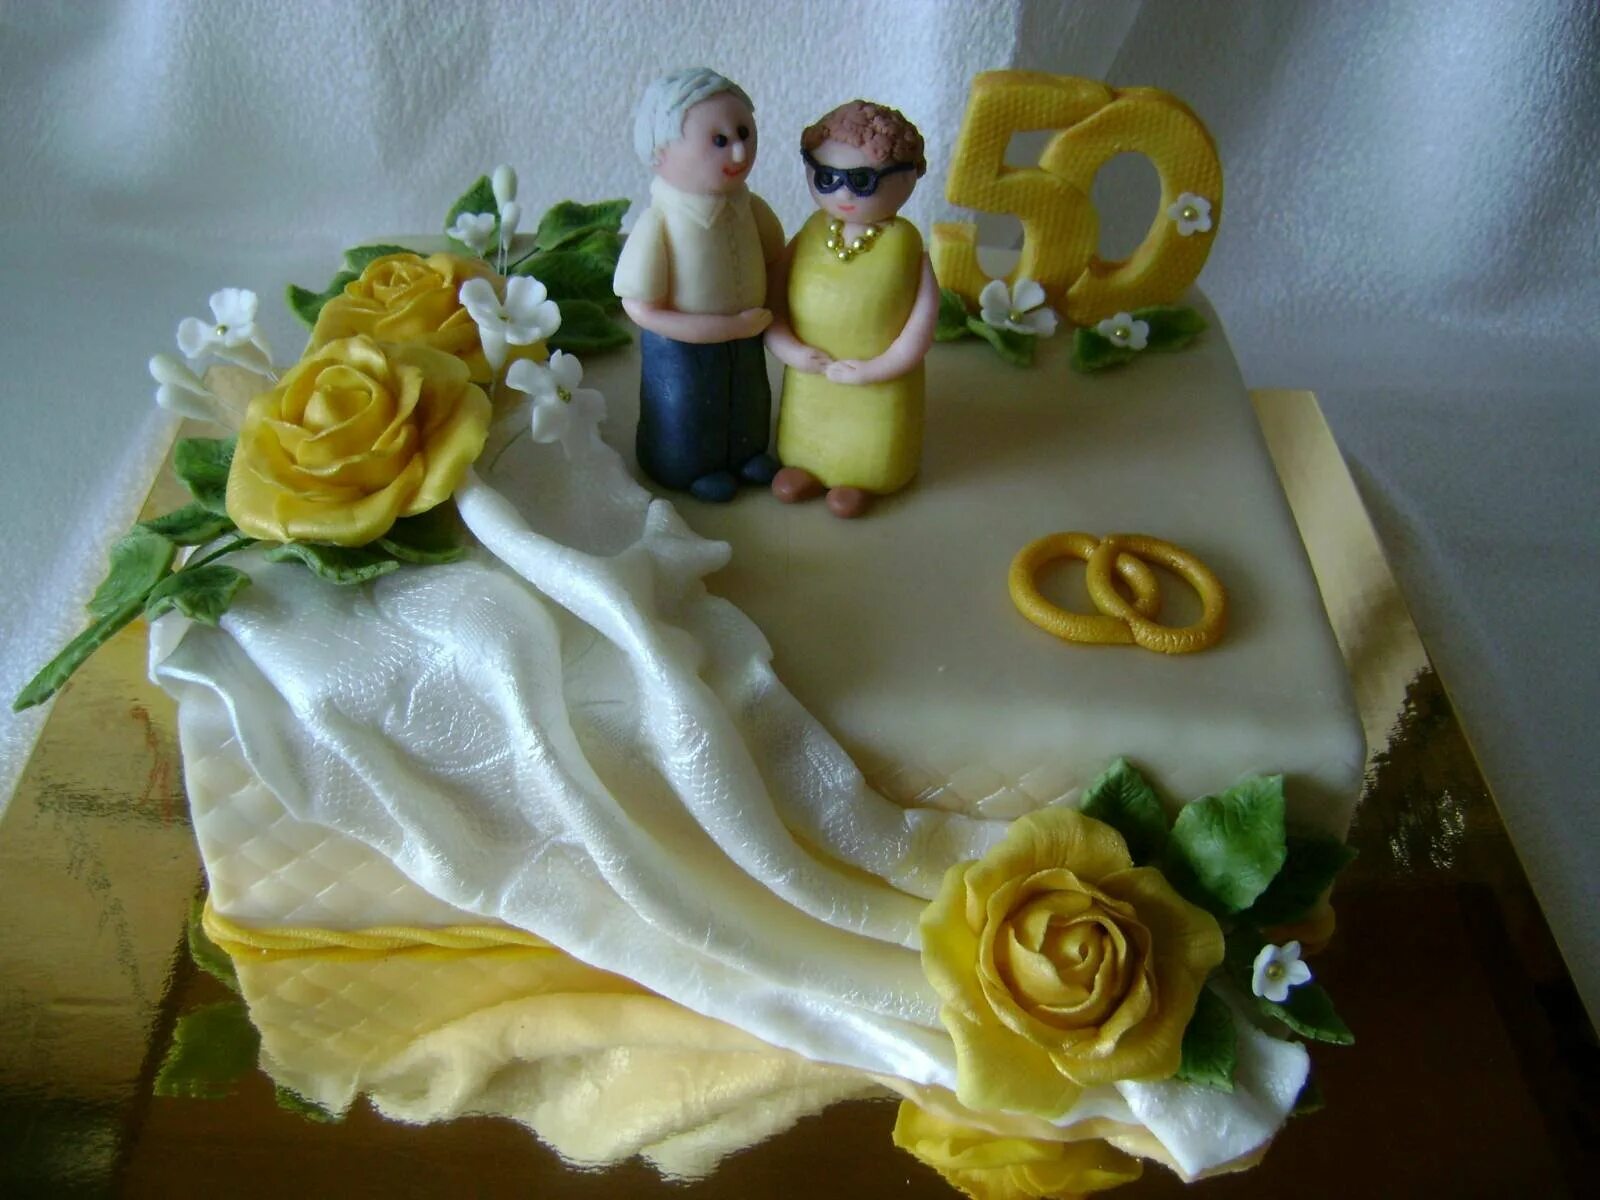 Торт на золотую свадьбу. Украшение торта на золотую свадьбу. Торт на юбилей свадьбы. Торт на золотую свадьбу родителям. 50 лет совместной жизни родителям